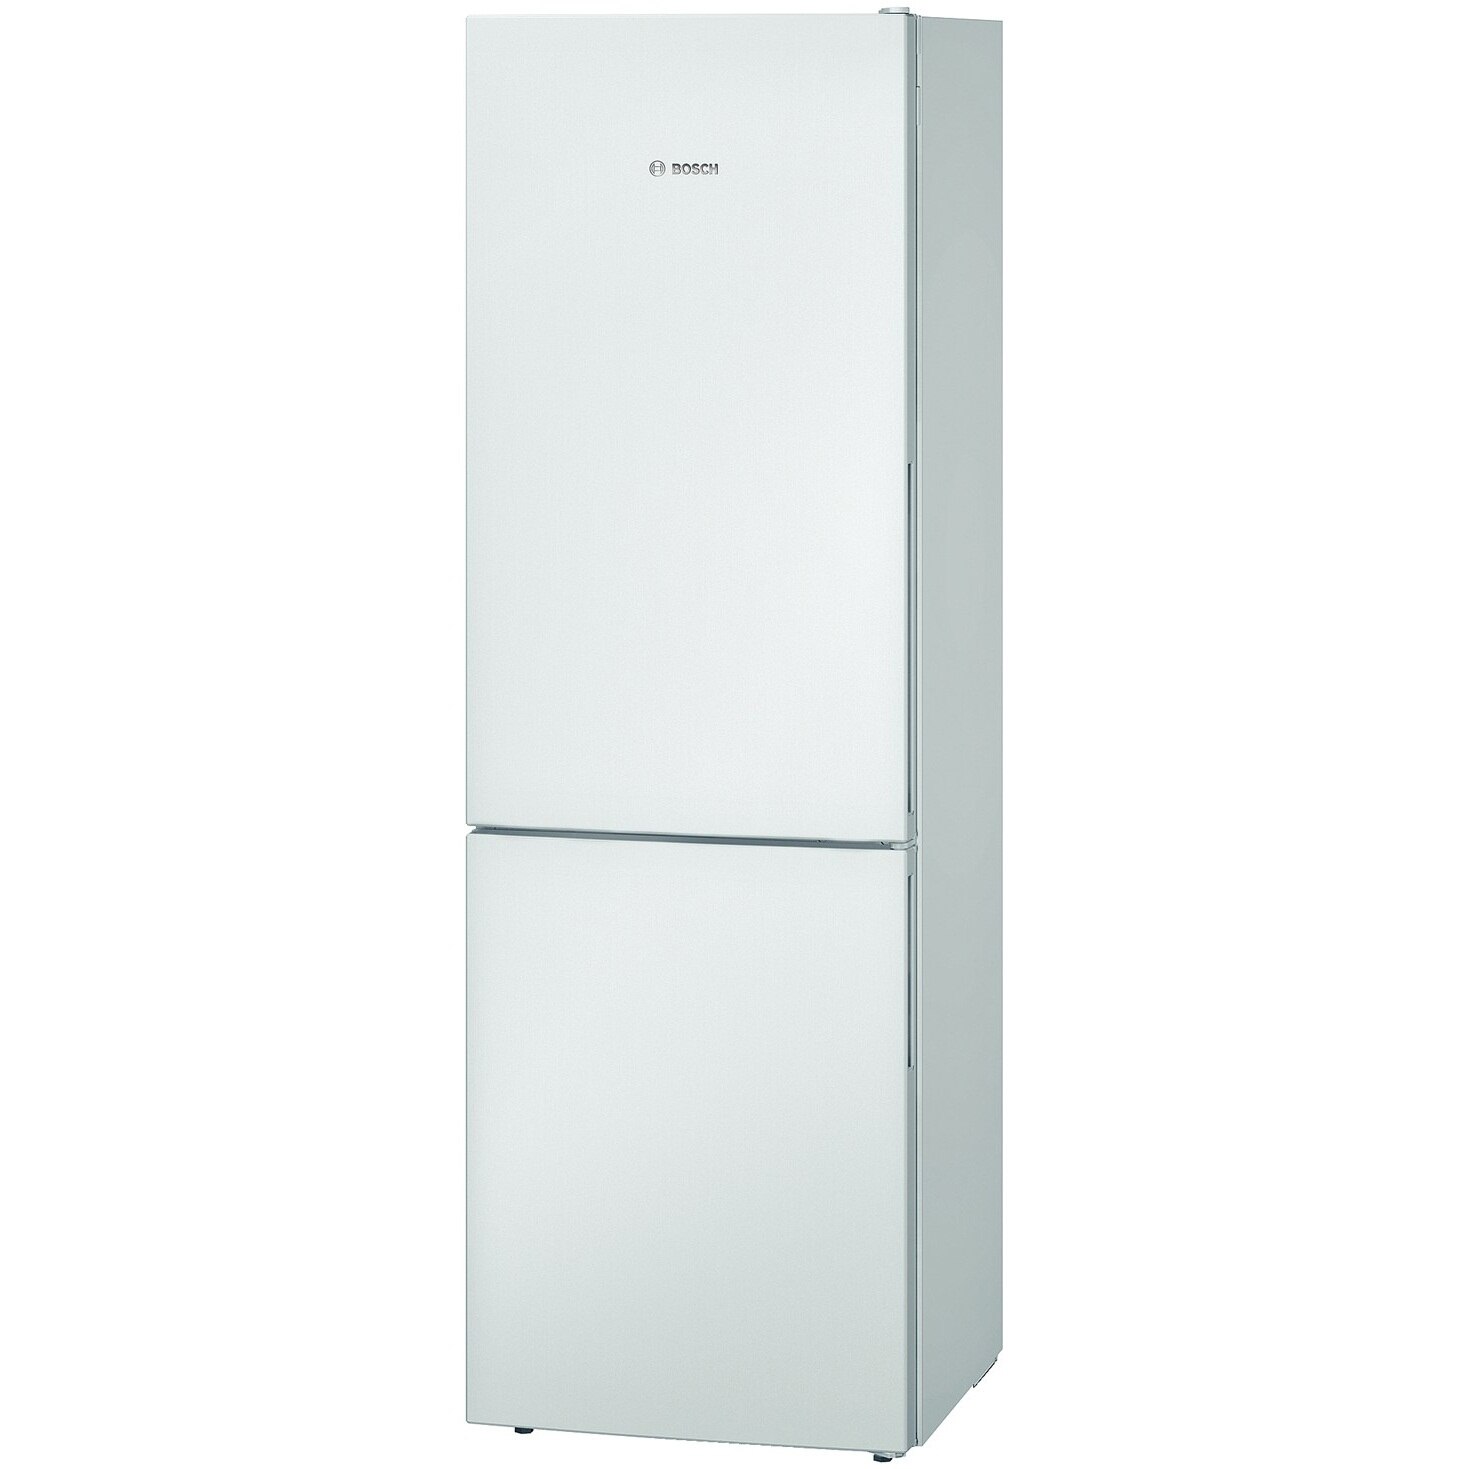 Хладилник Bosch KGV36UW30 с обем от 309 л.